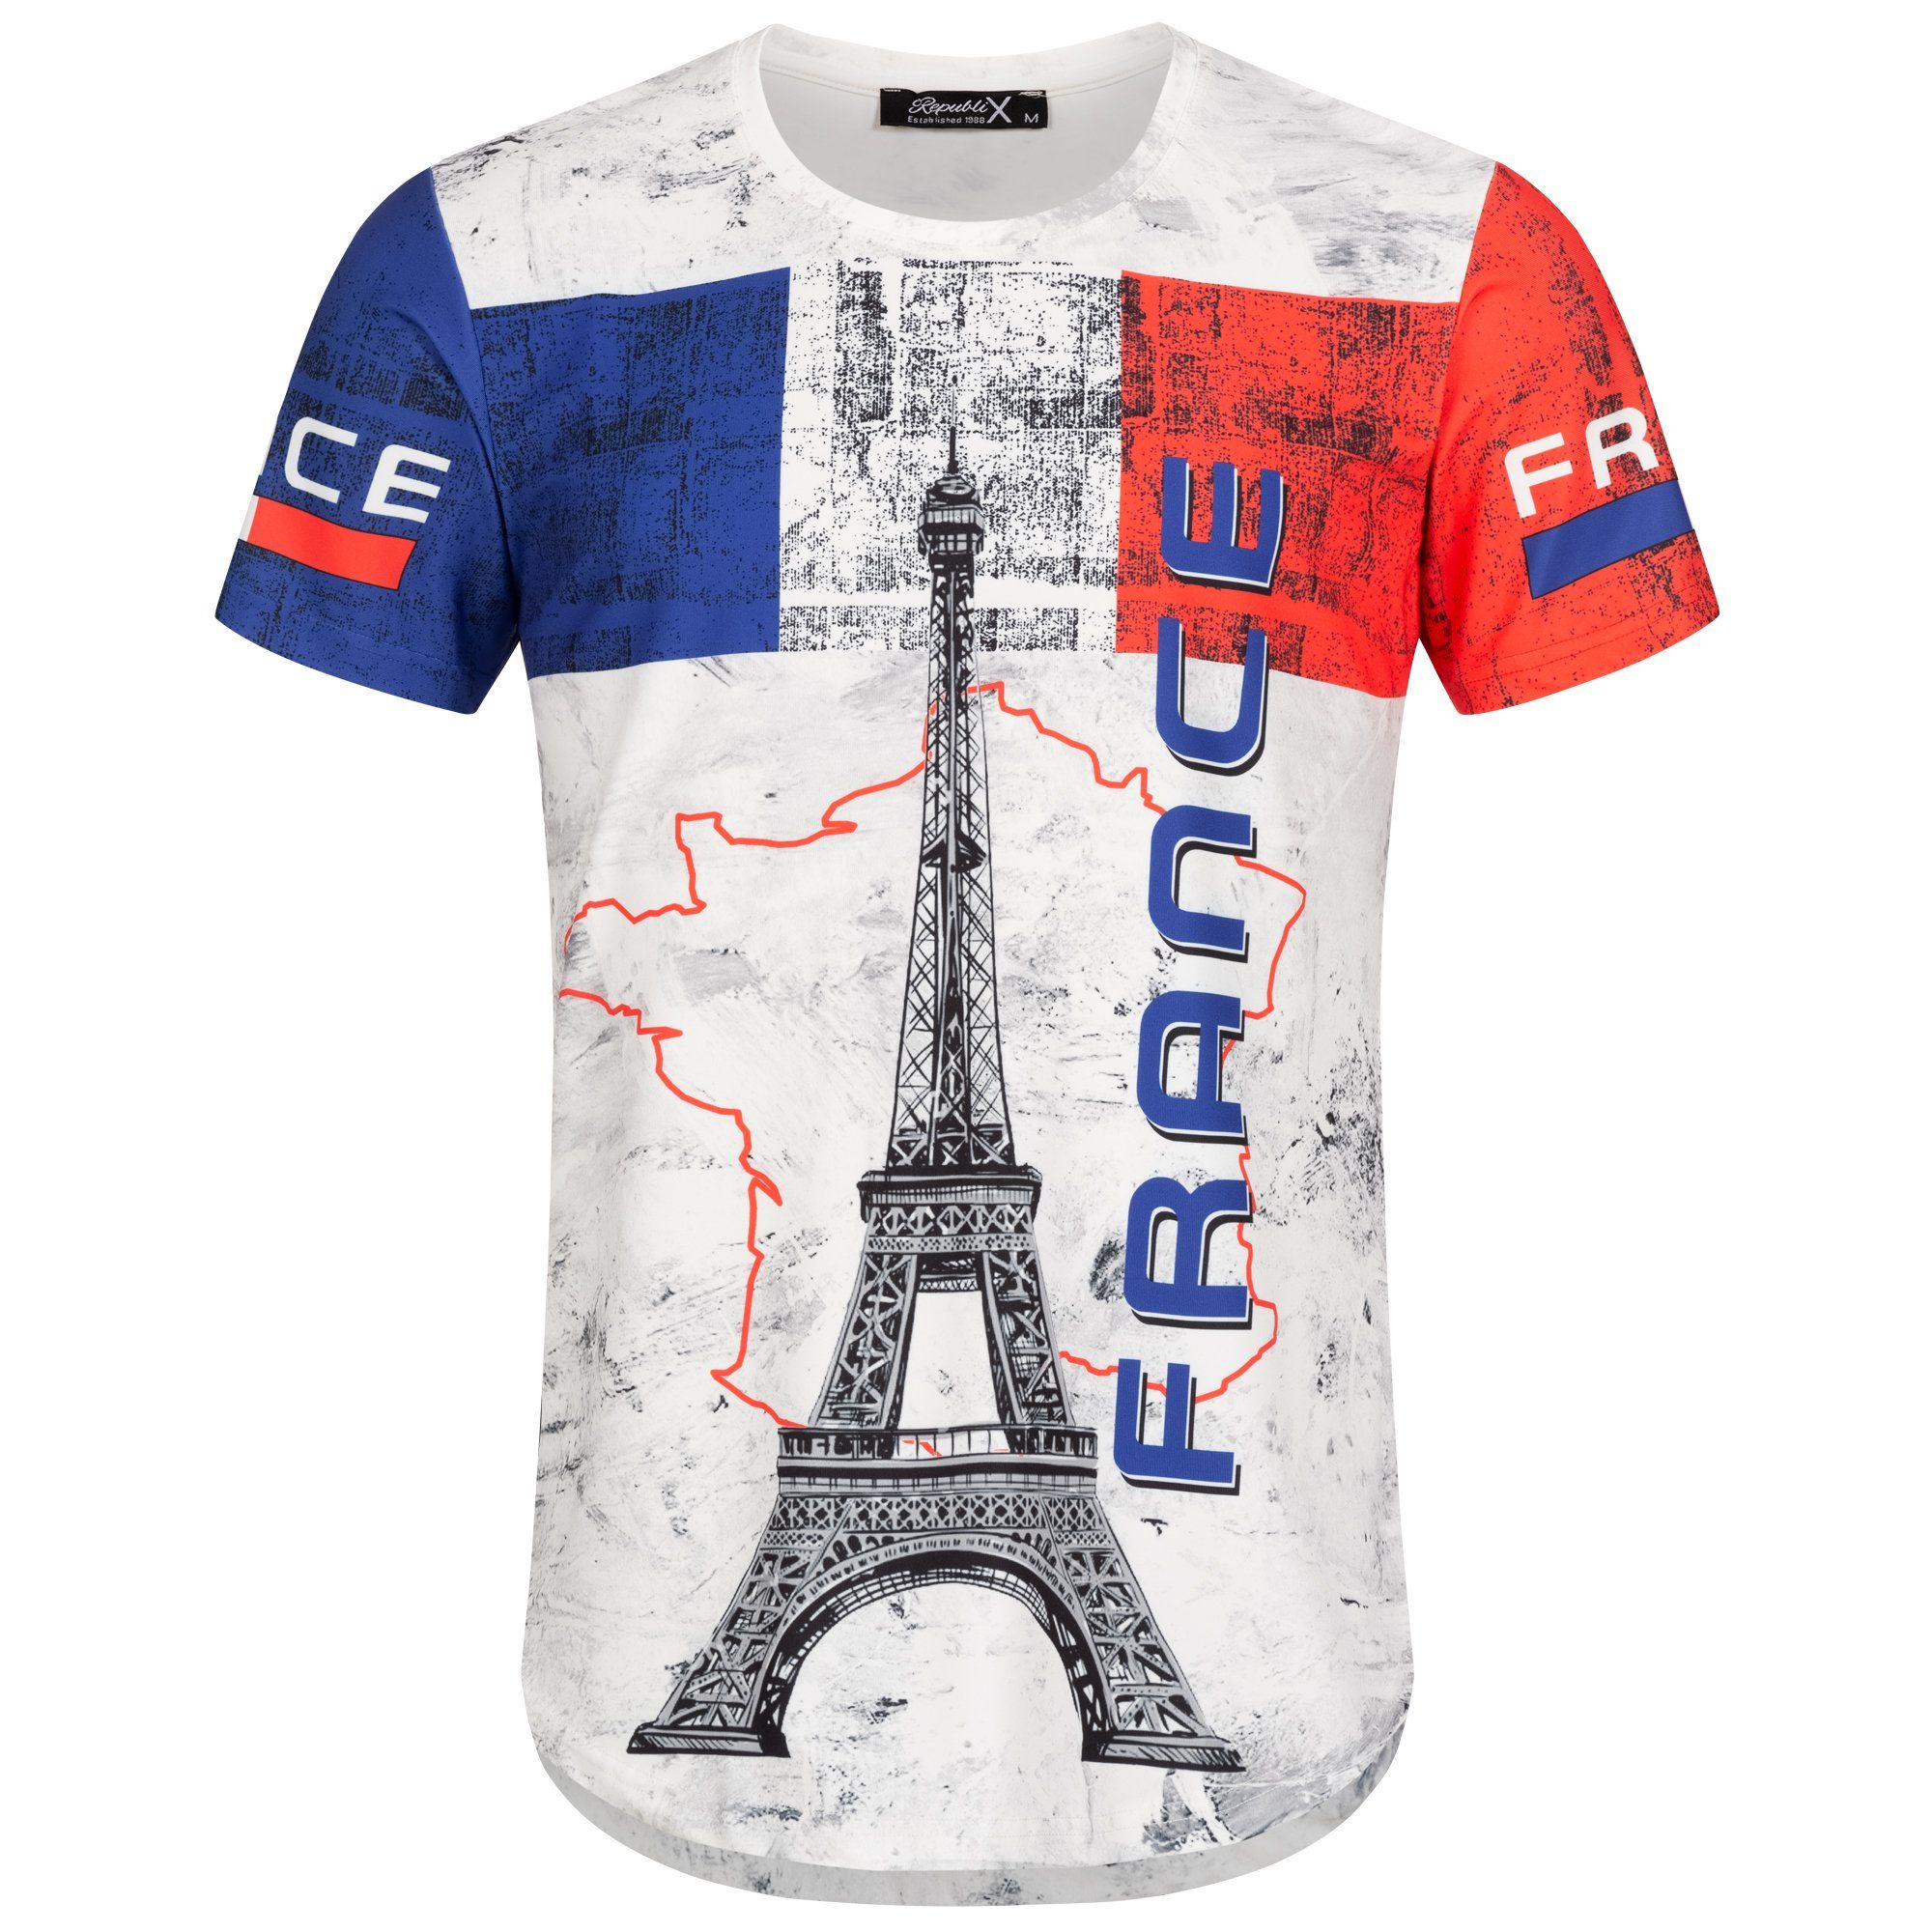 REPUBLIX T-Shirt FAN Herren Länder EM WM Oversize Crew Neck Shirt mit Rundhalsausschnitt Frankreich